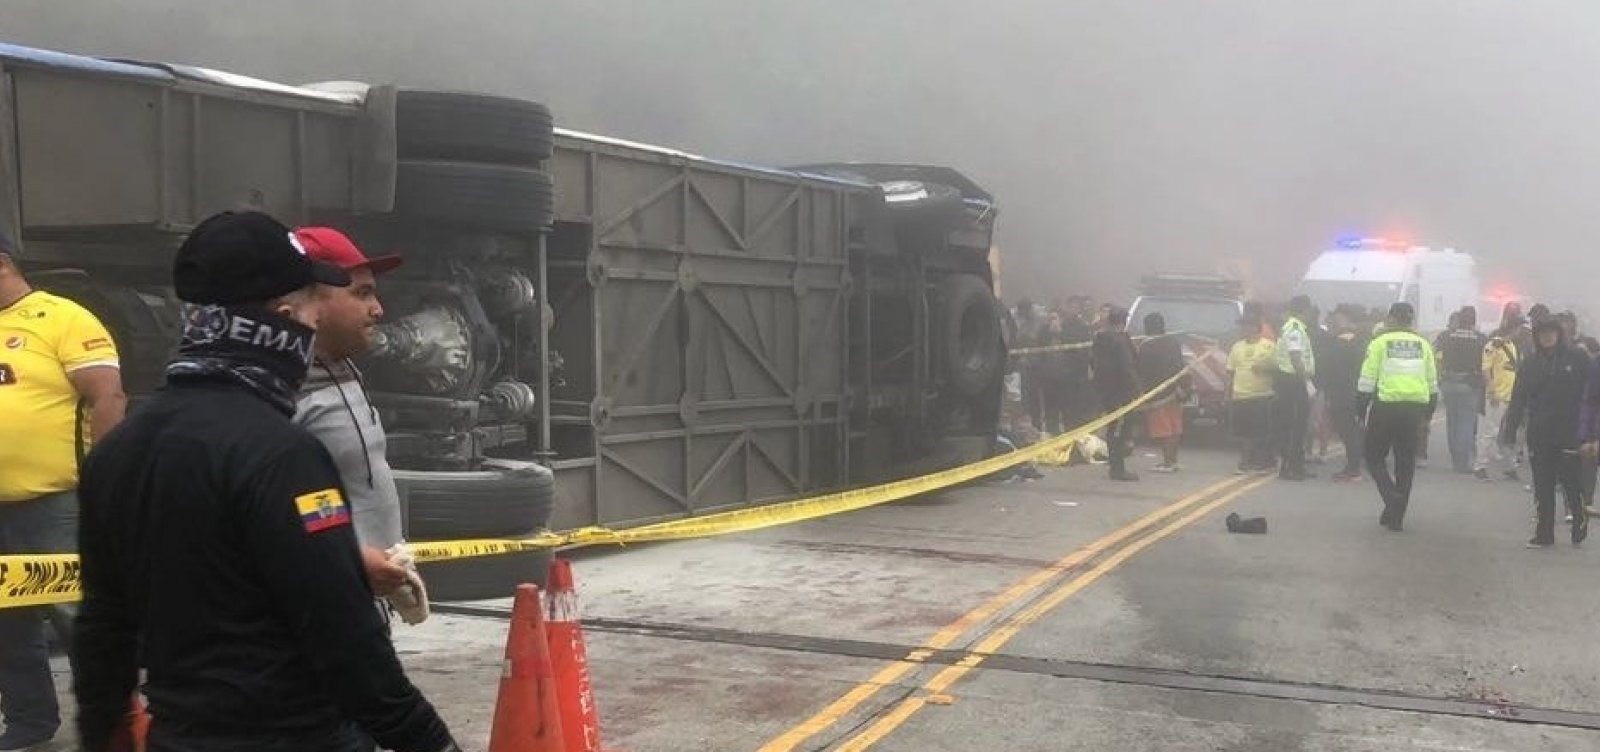 Doze torcedores do Barcelona de Guayaquil morrem em acidente de ônibus